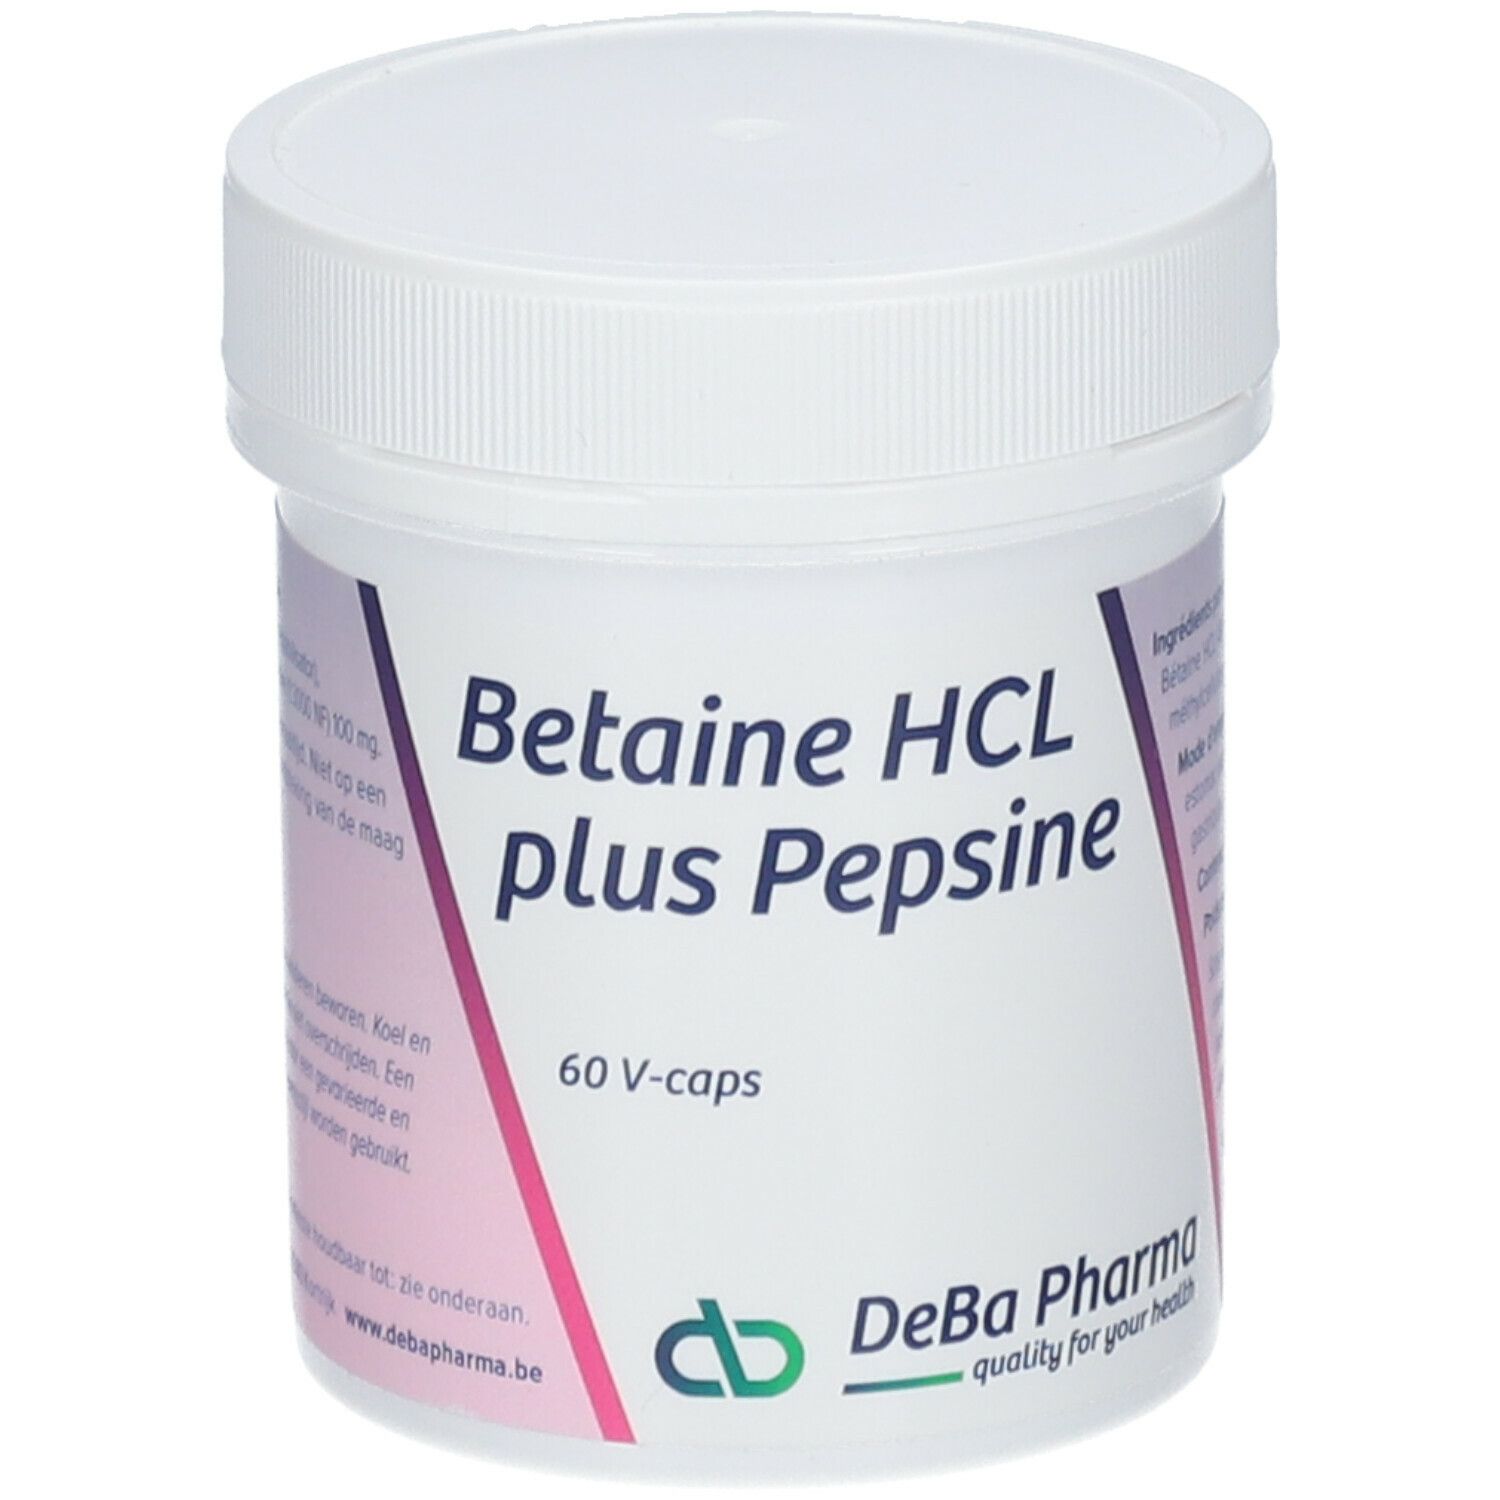 DeBa Pharma Betaine HCL